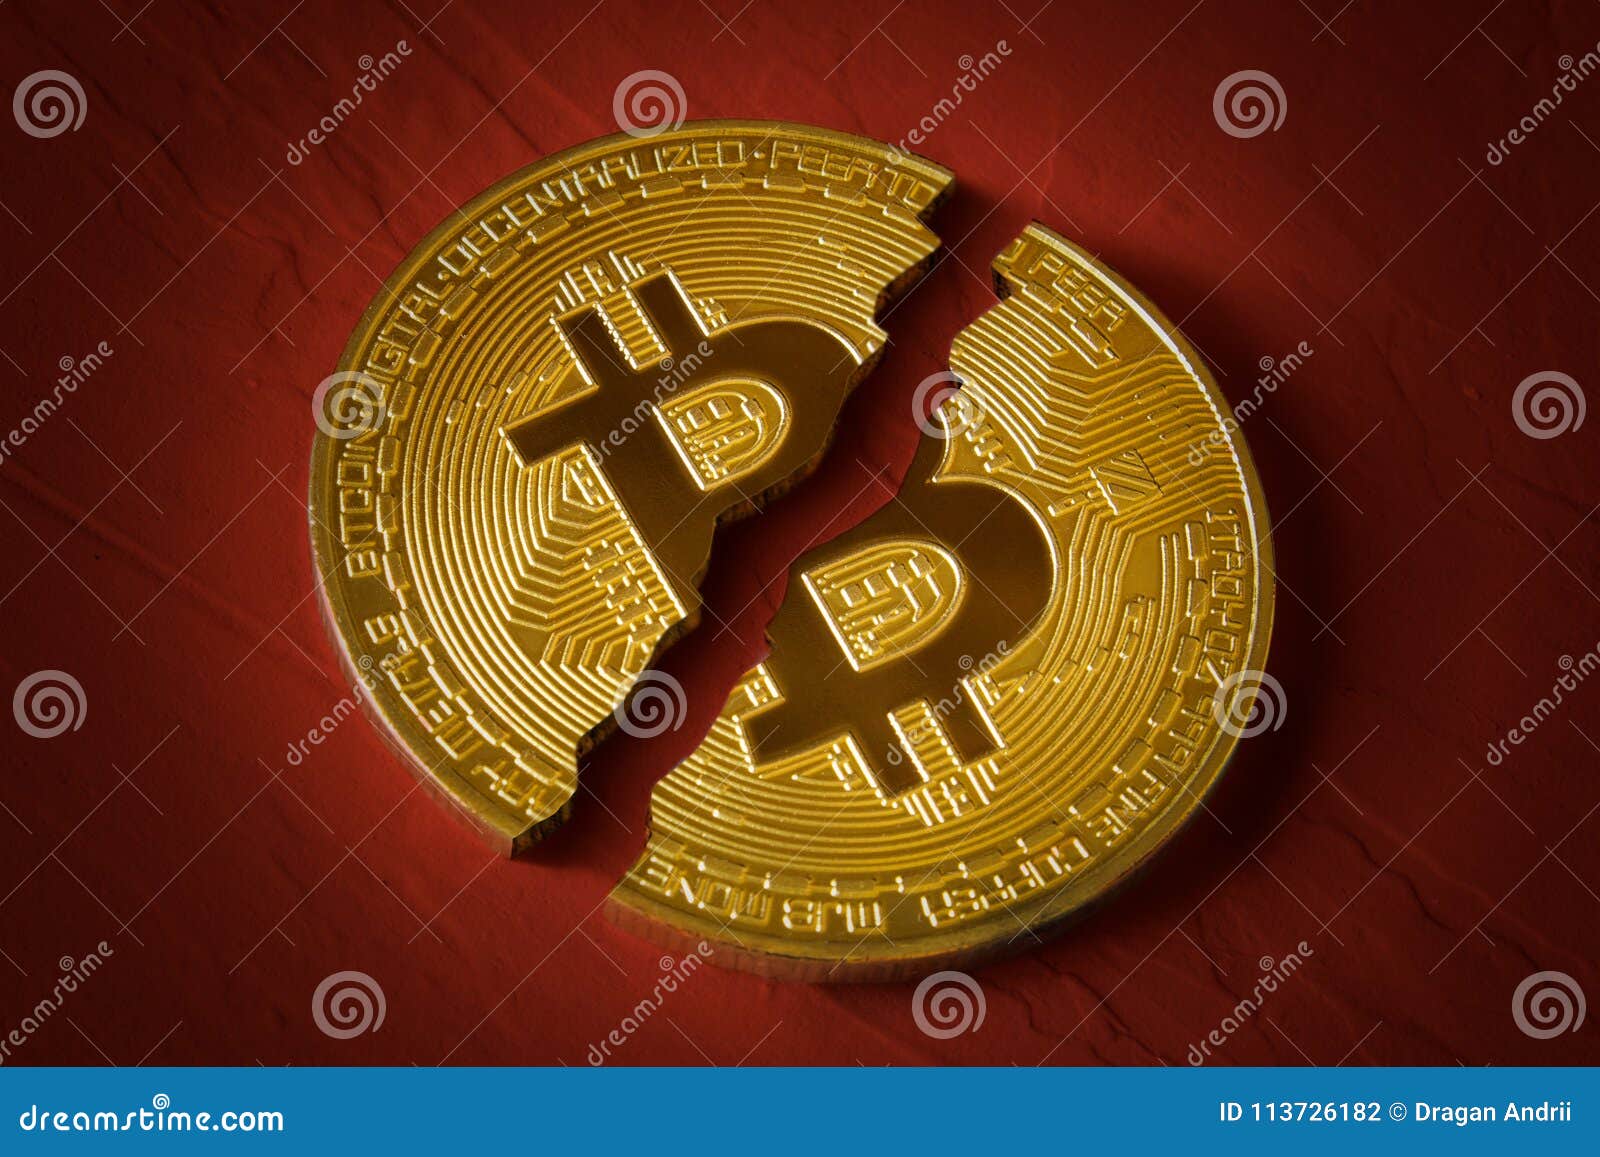 commercio curso bitcoin gratis